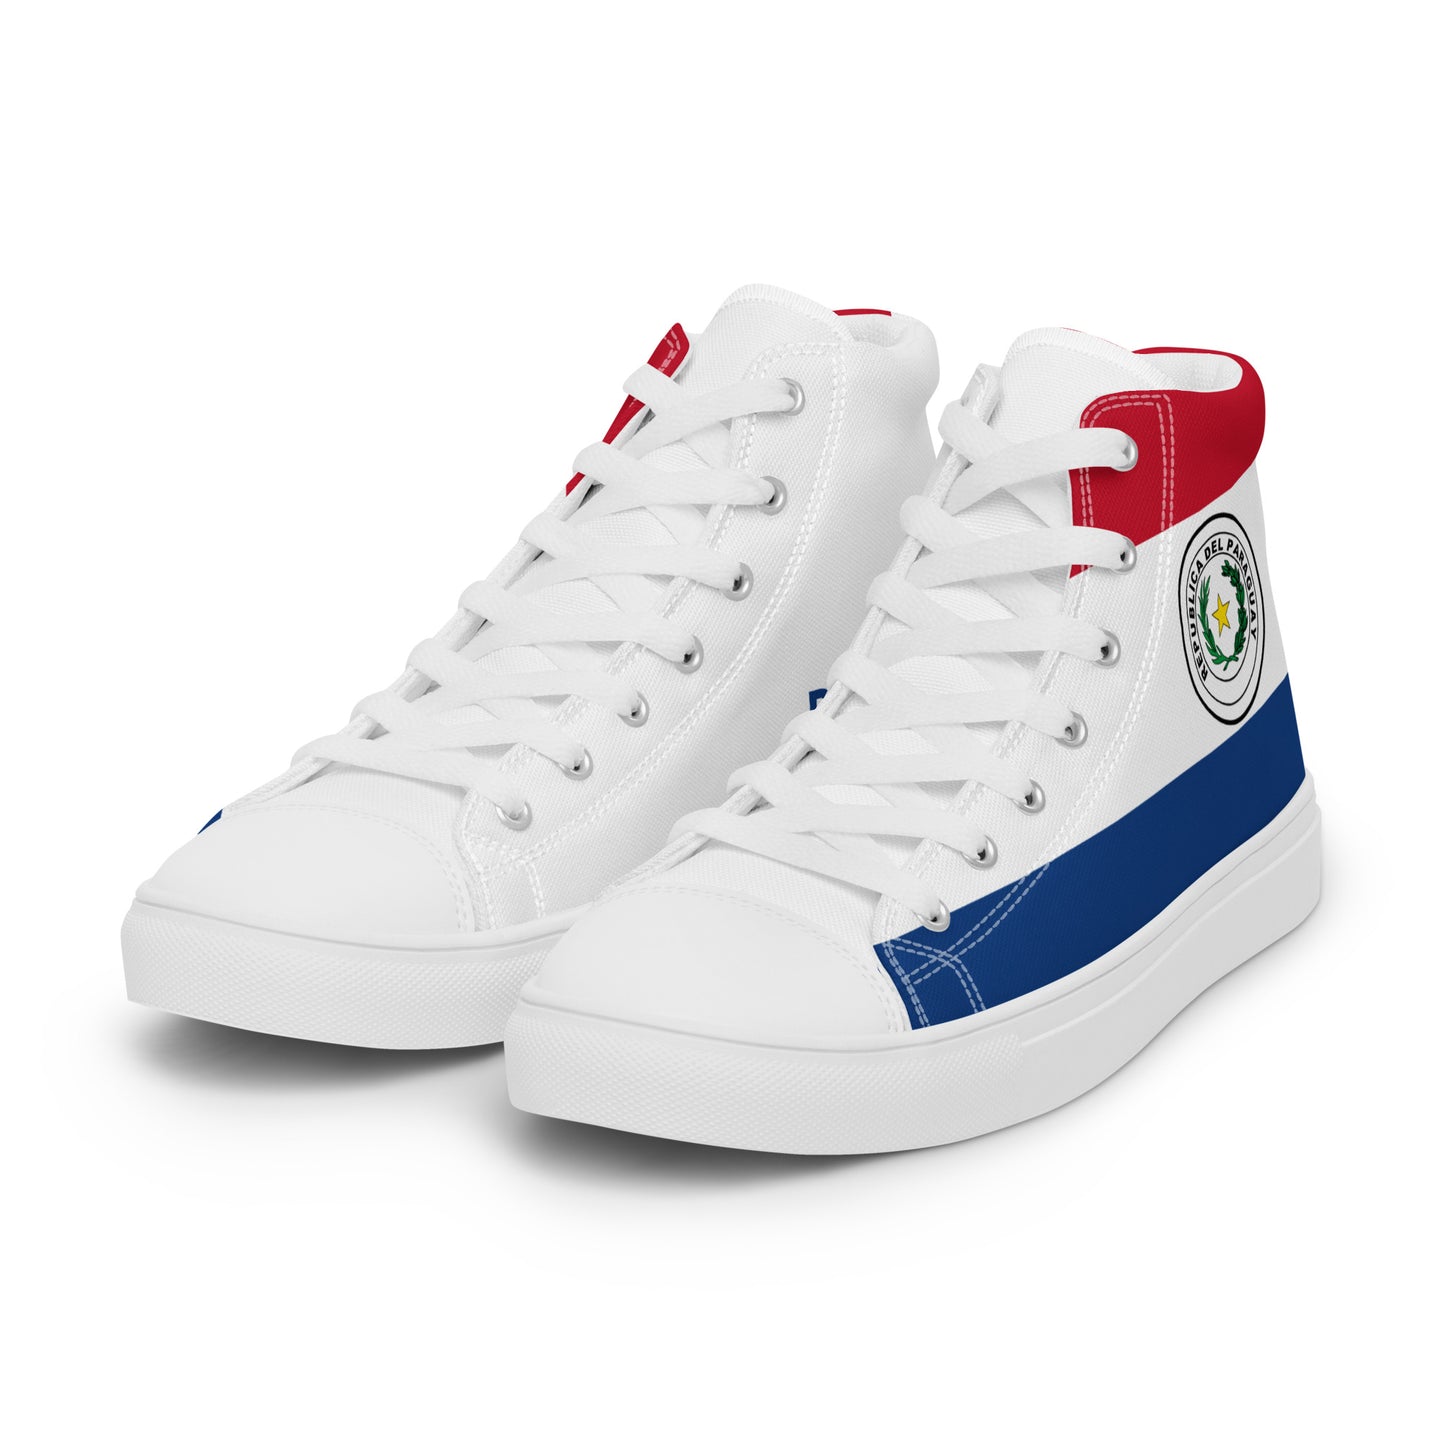 Paraguay - Women - Bandera - High top shoes